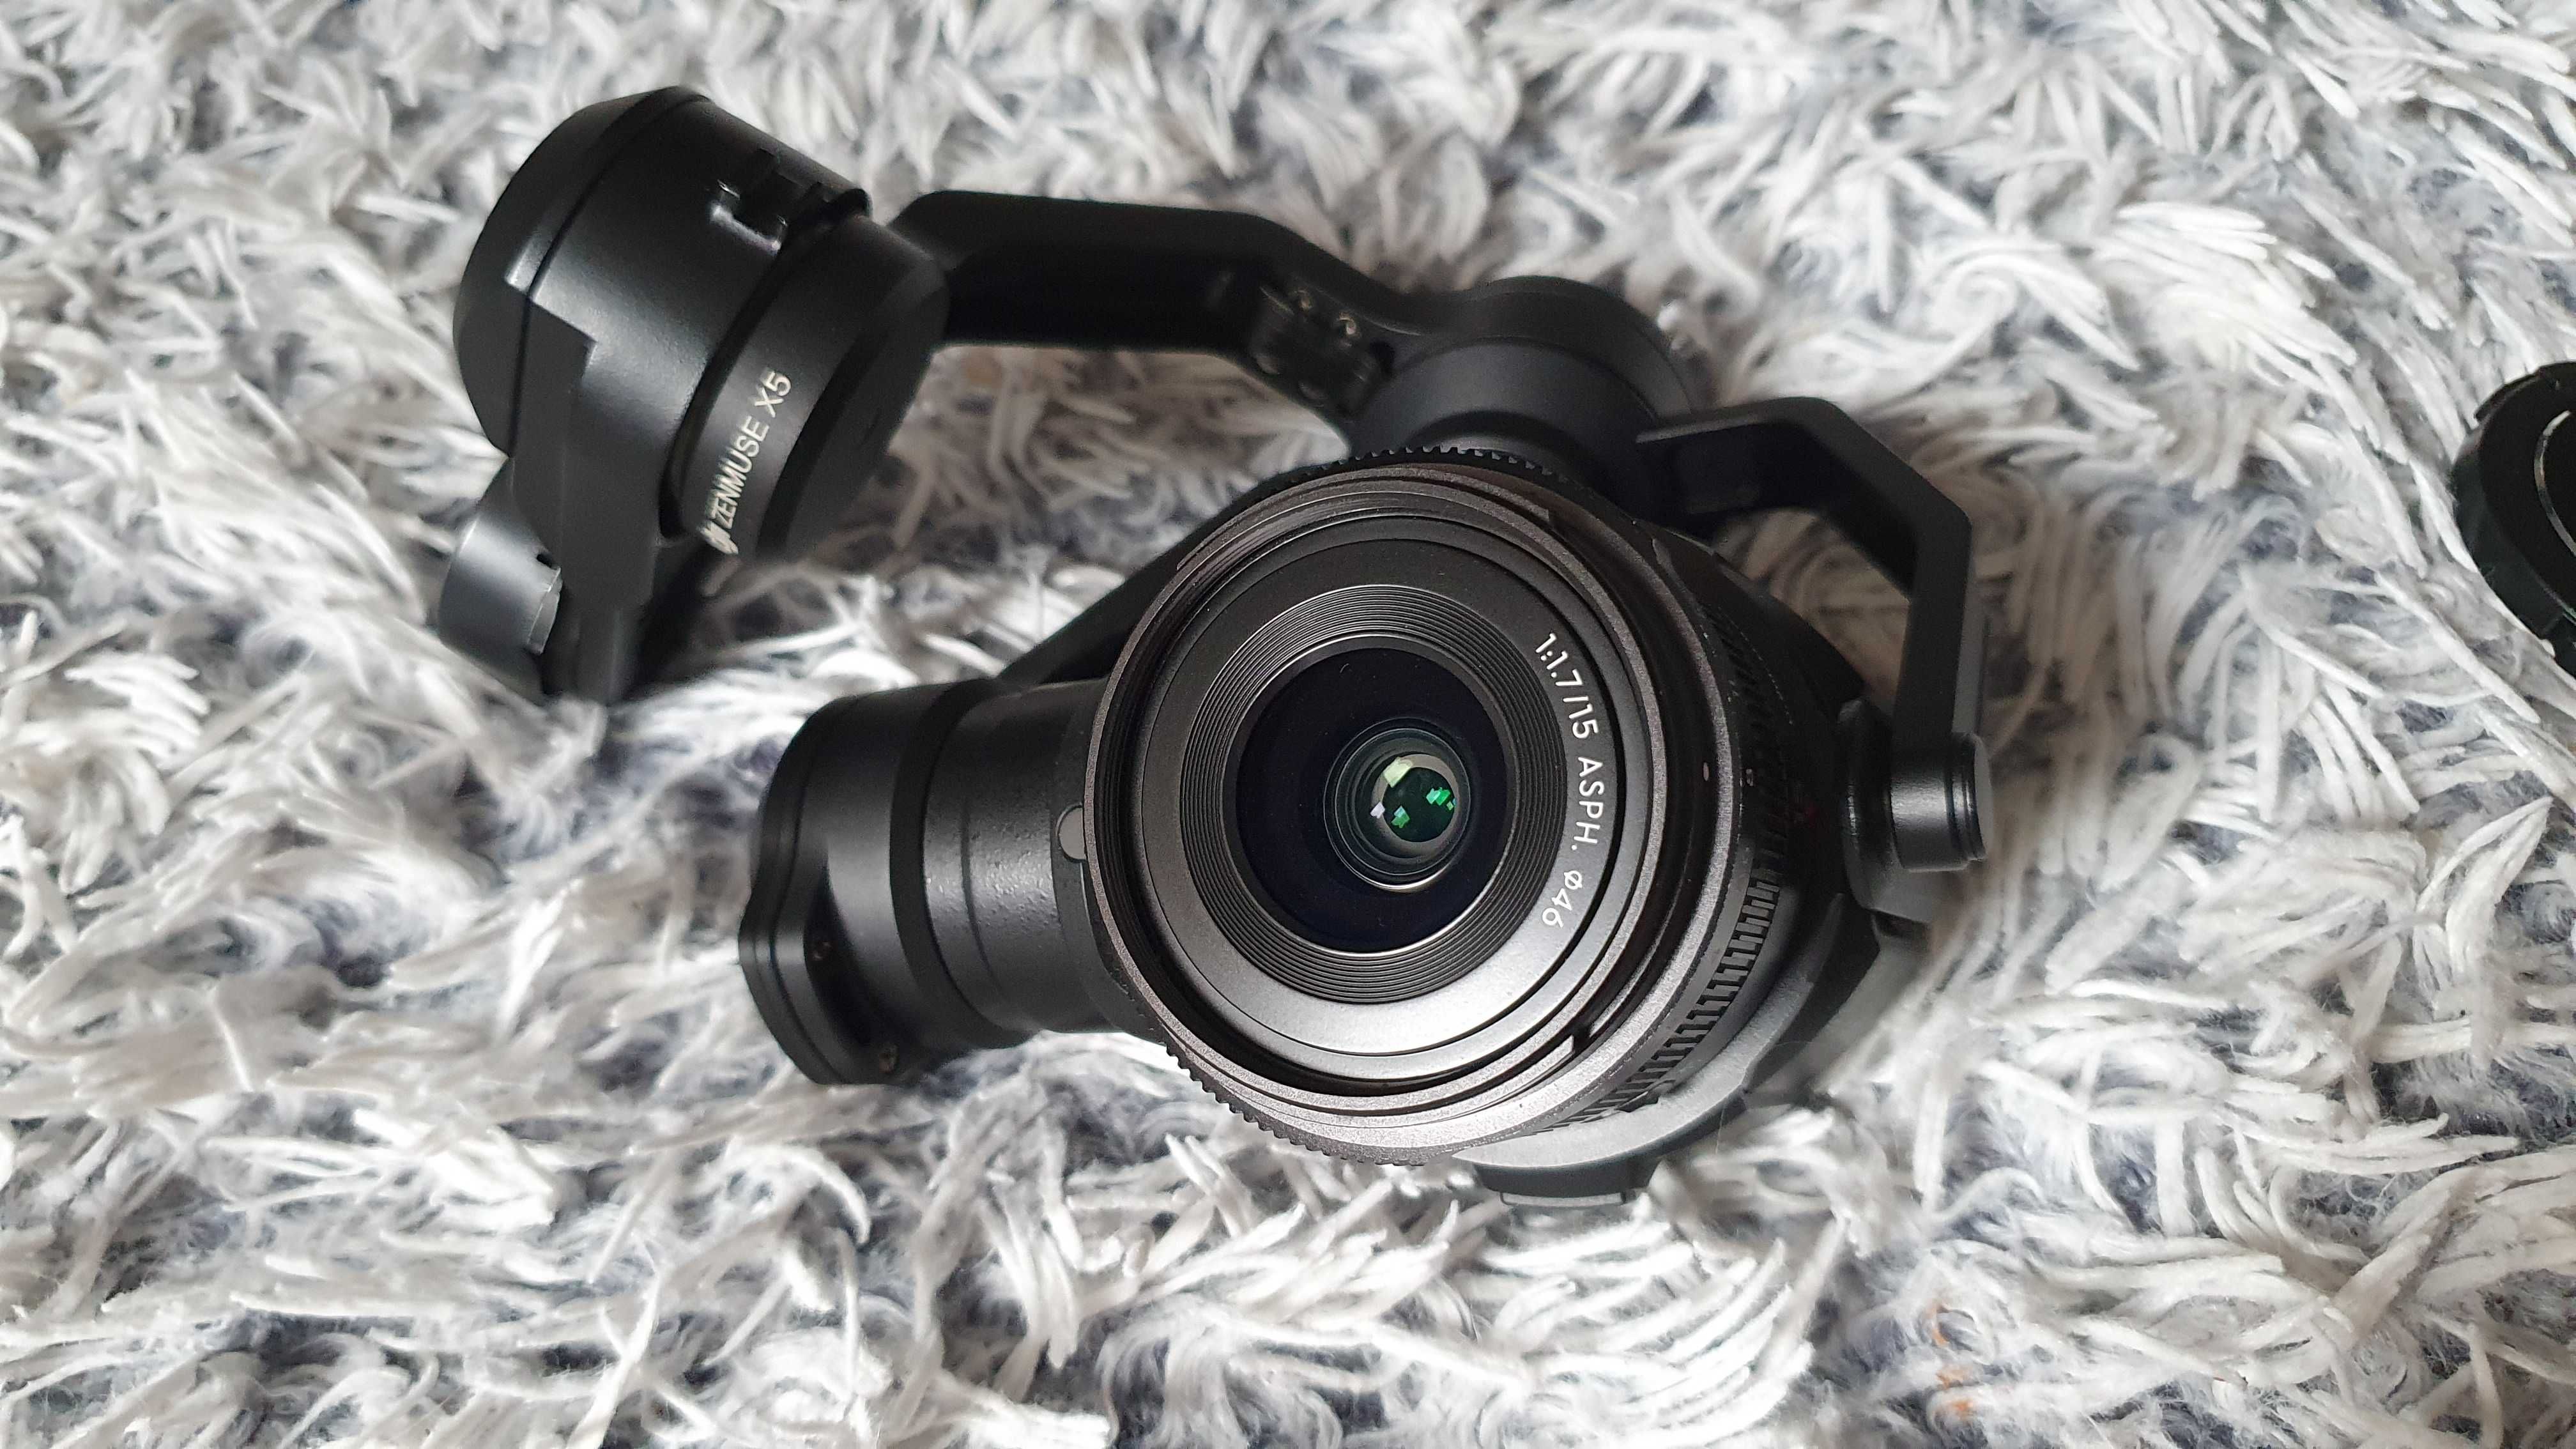 kamera zenmuse x5 do drona dji inspire 1 + obiektyw DJI MFT - jak nowe